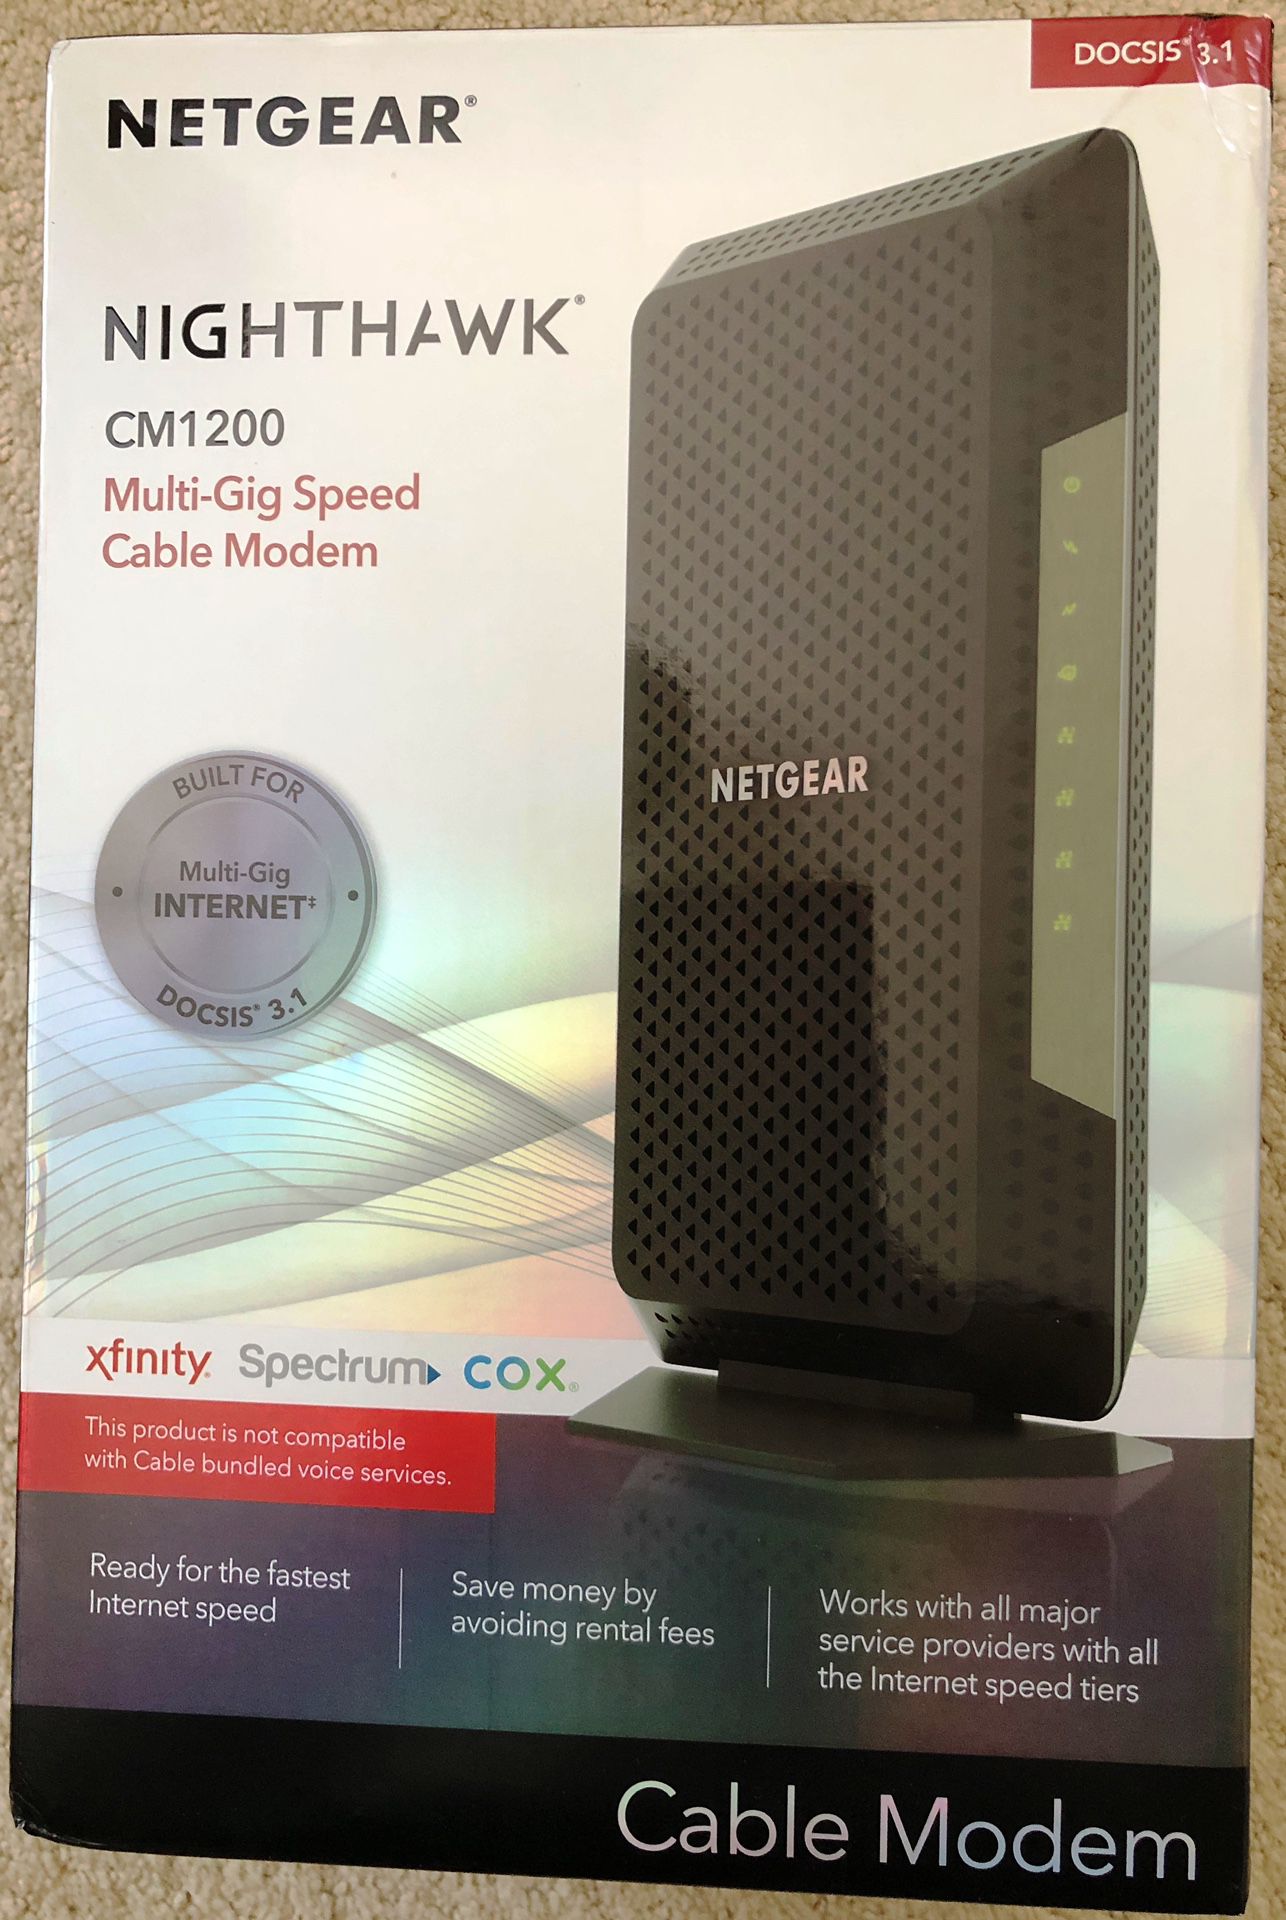 New Netgear Nighthawk DOCSIS 3.1 CM1200 Multi-Gig Cable Modem